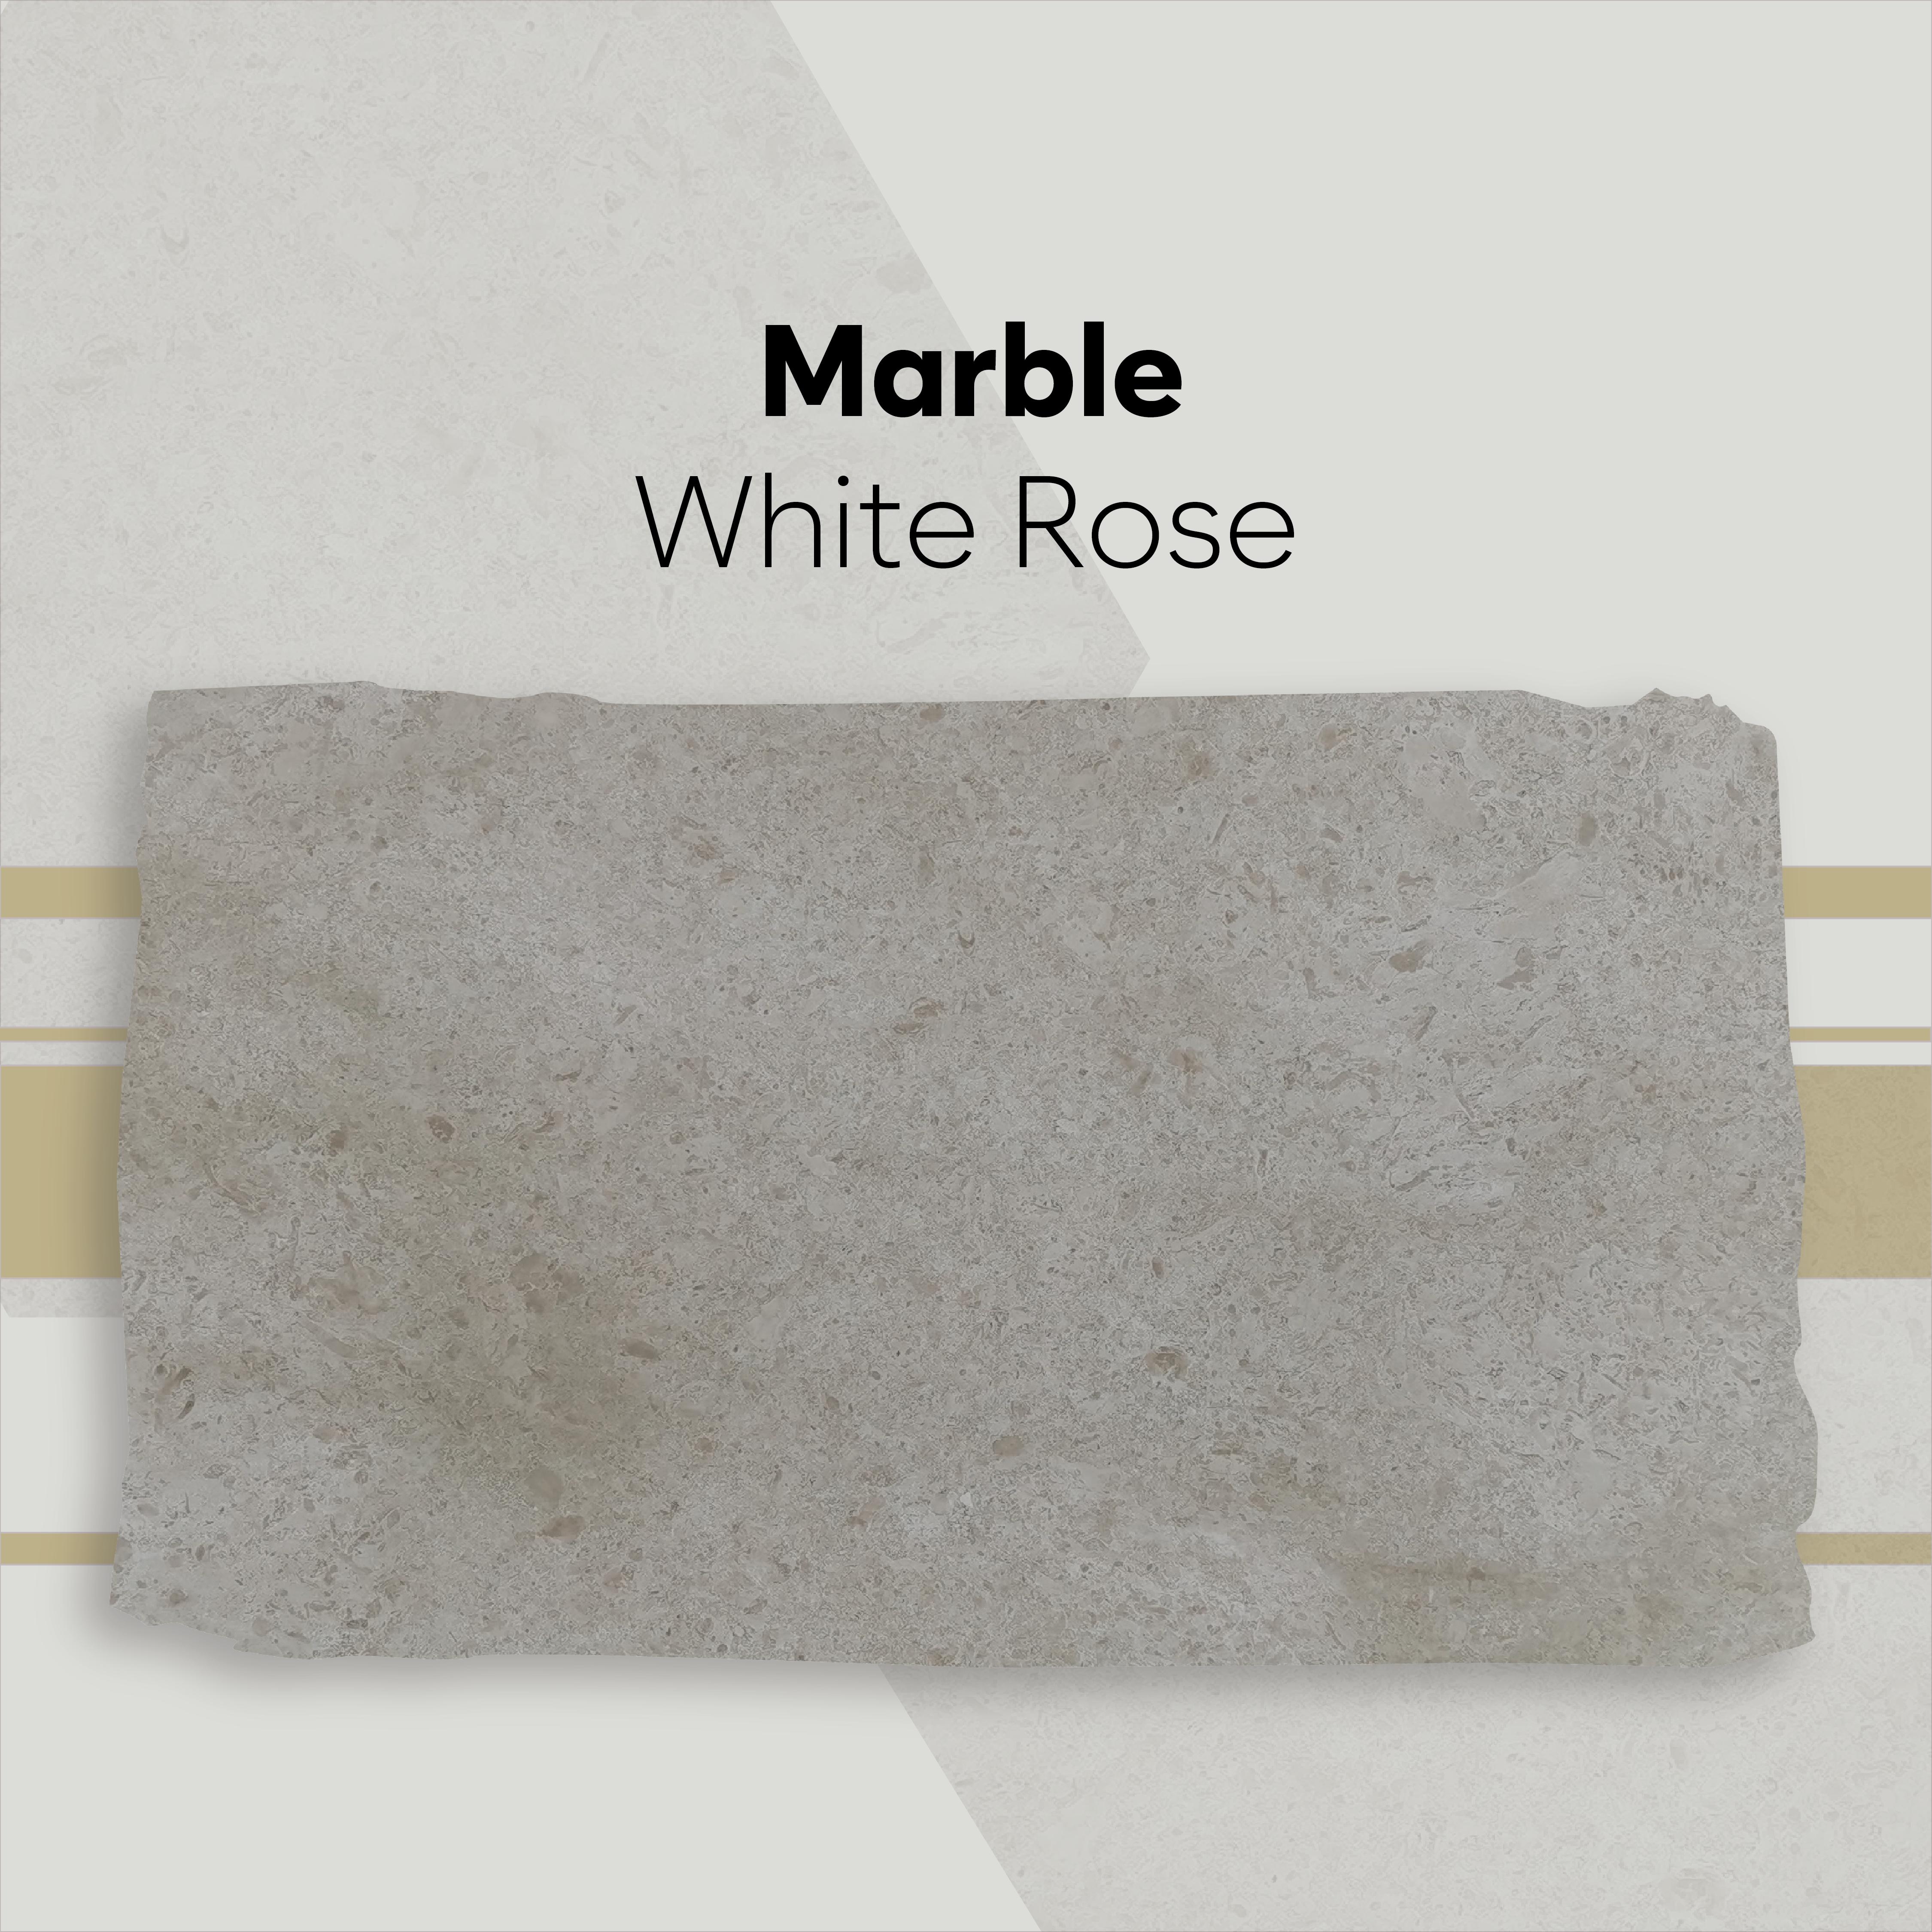 White Rose-01.jpg